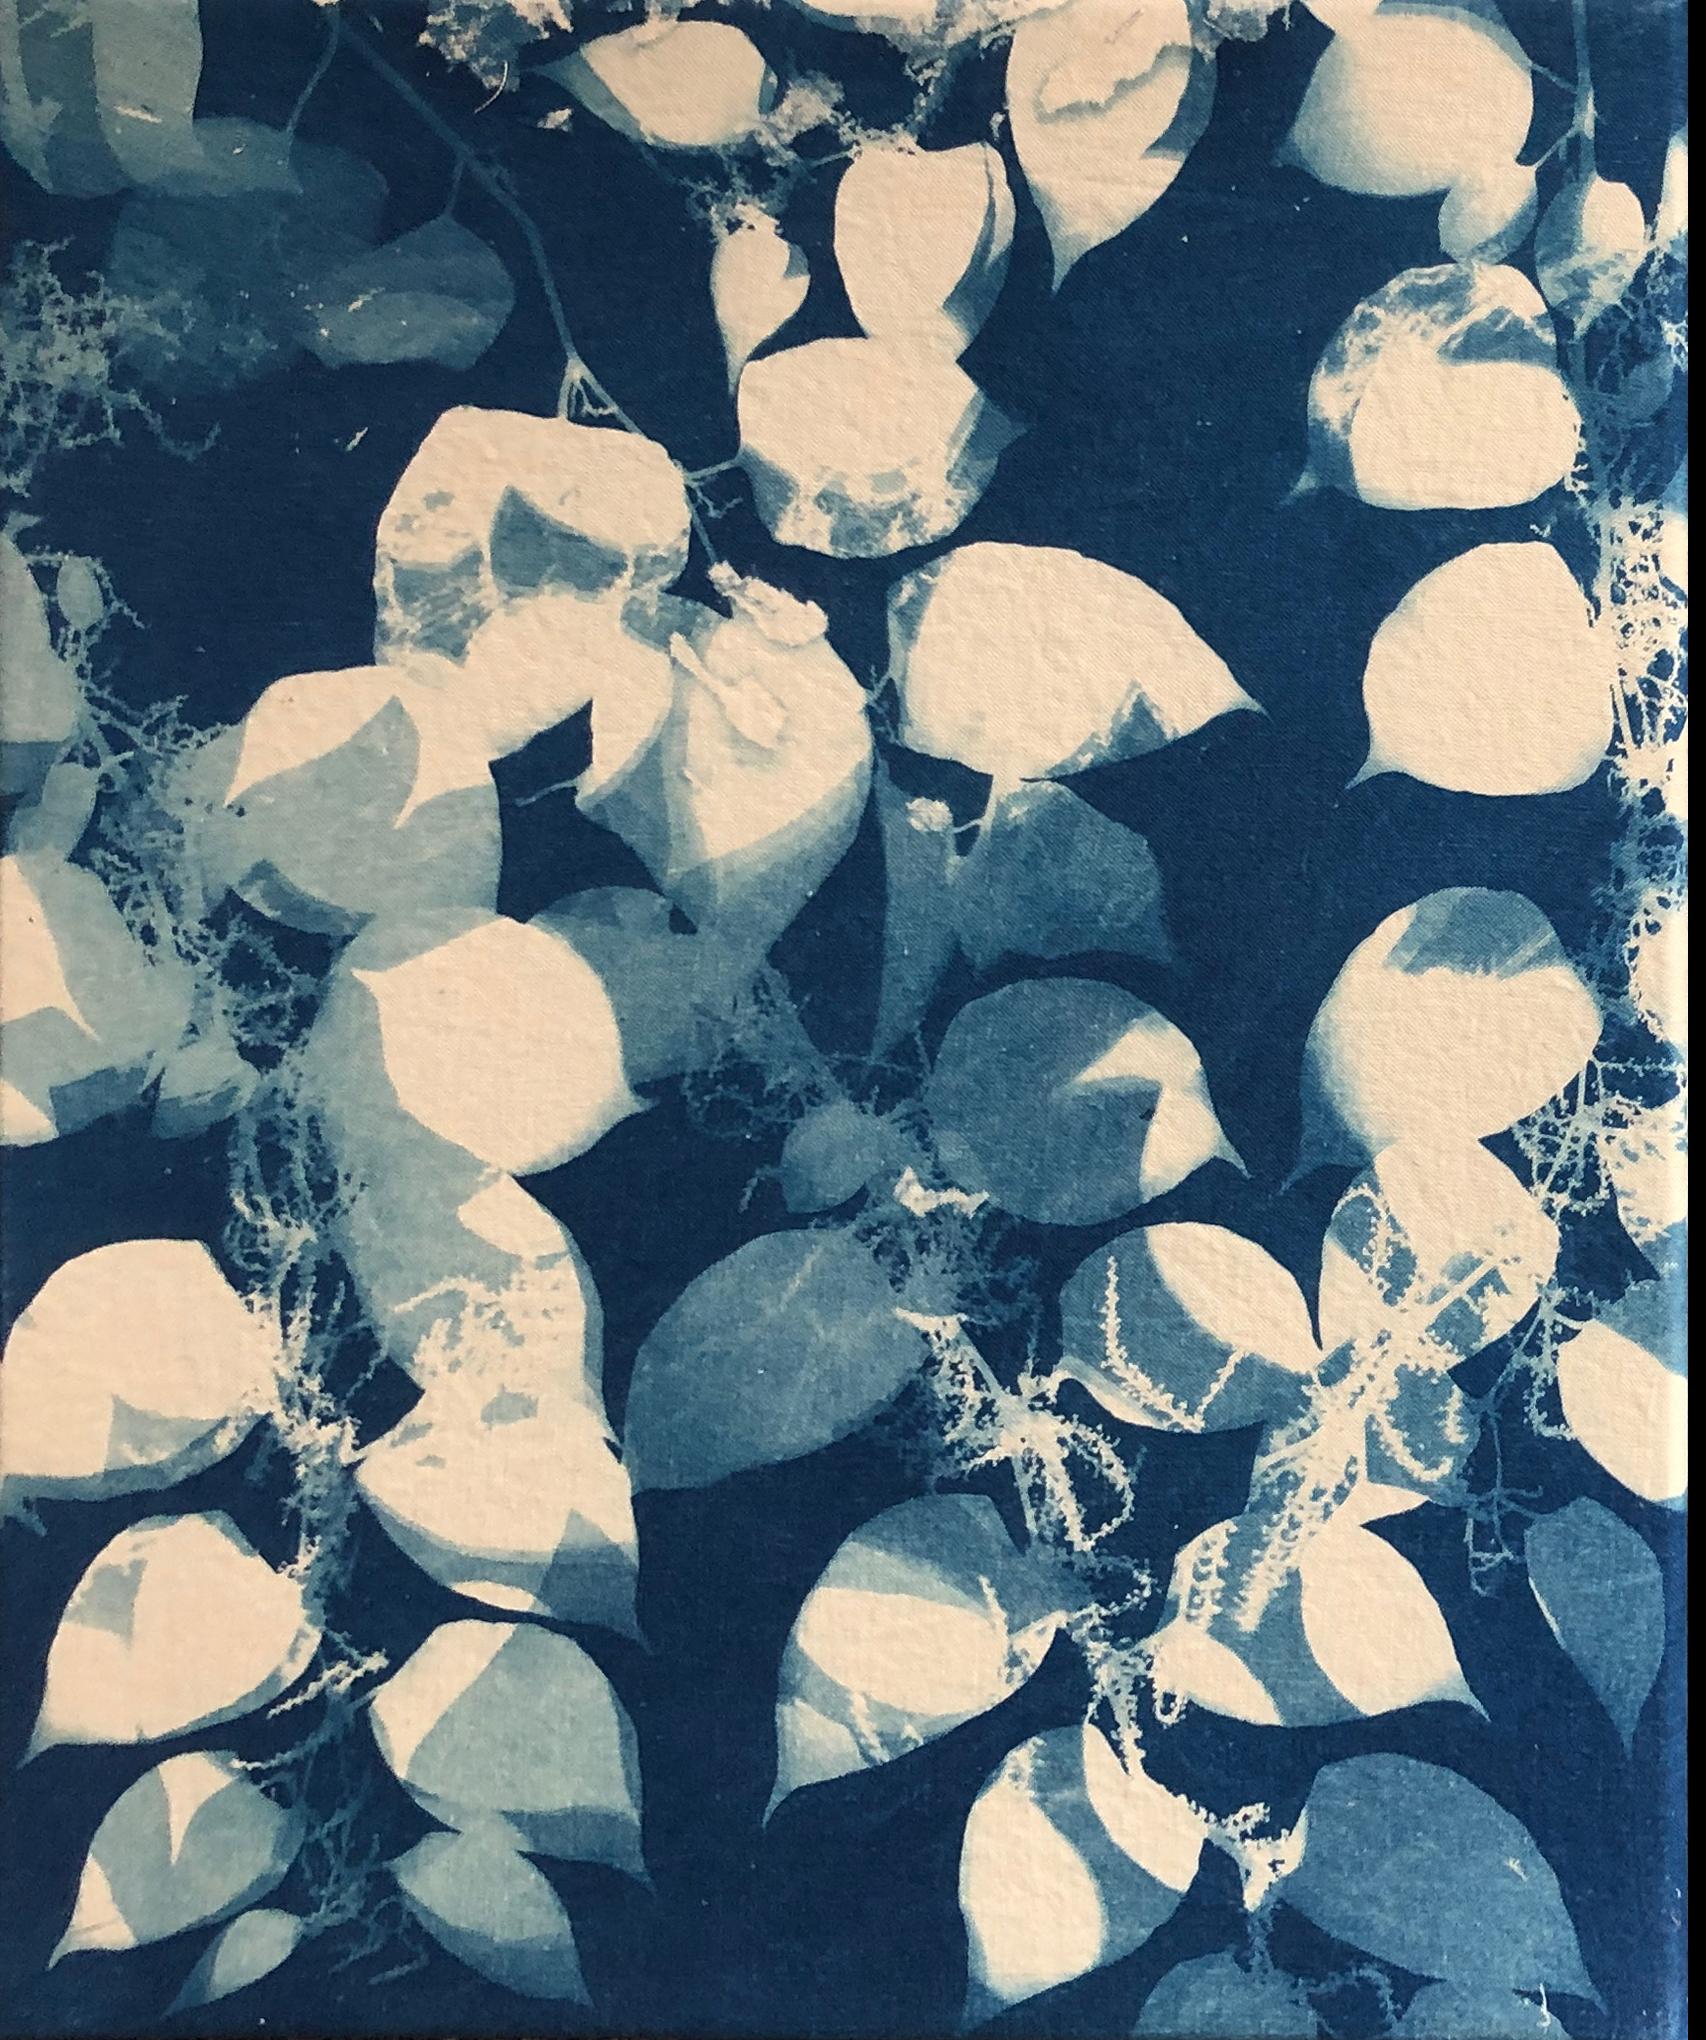 Marie Craig Abstract Photograph – "Knöterich", zeitgenössisch, Blätter, Zweige, blau, Cyanotypie, Fotografie